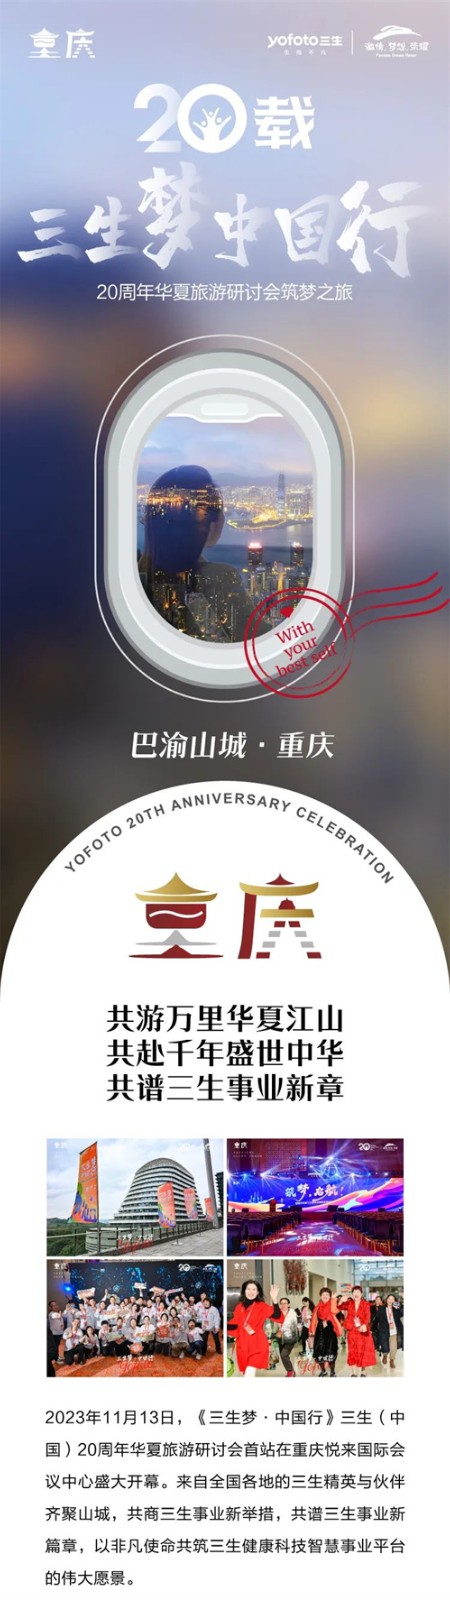 三生梦，中国行！三生（中国）20周年华夏旅游研讨会点燃梦想，成功启航！